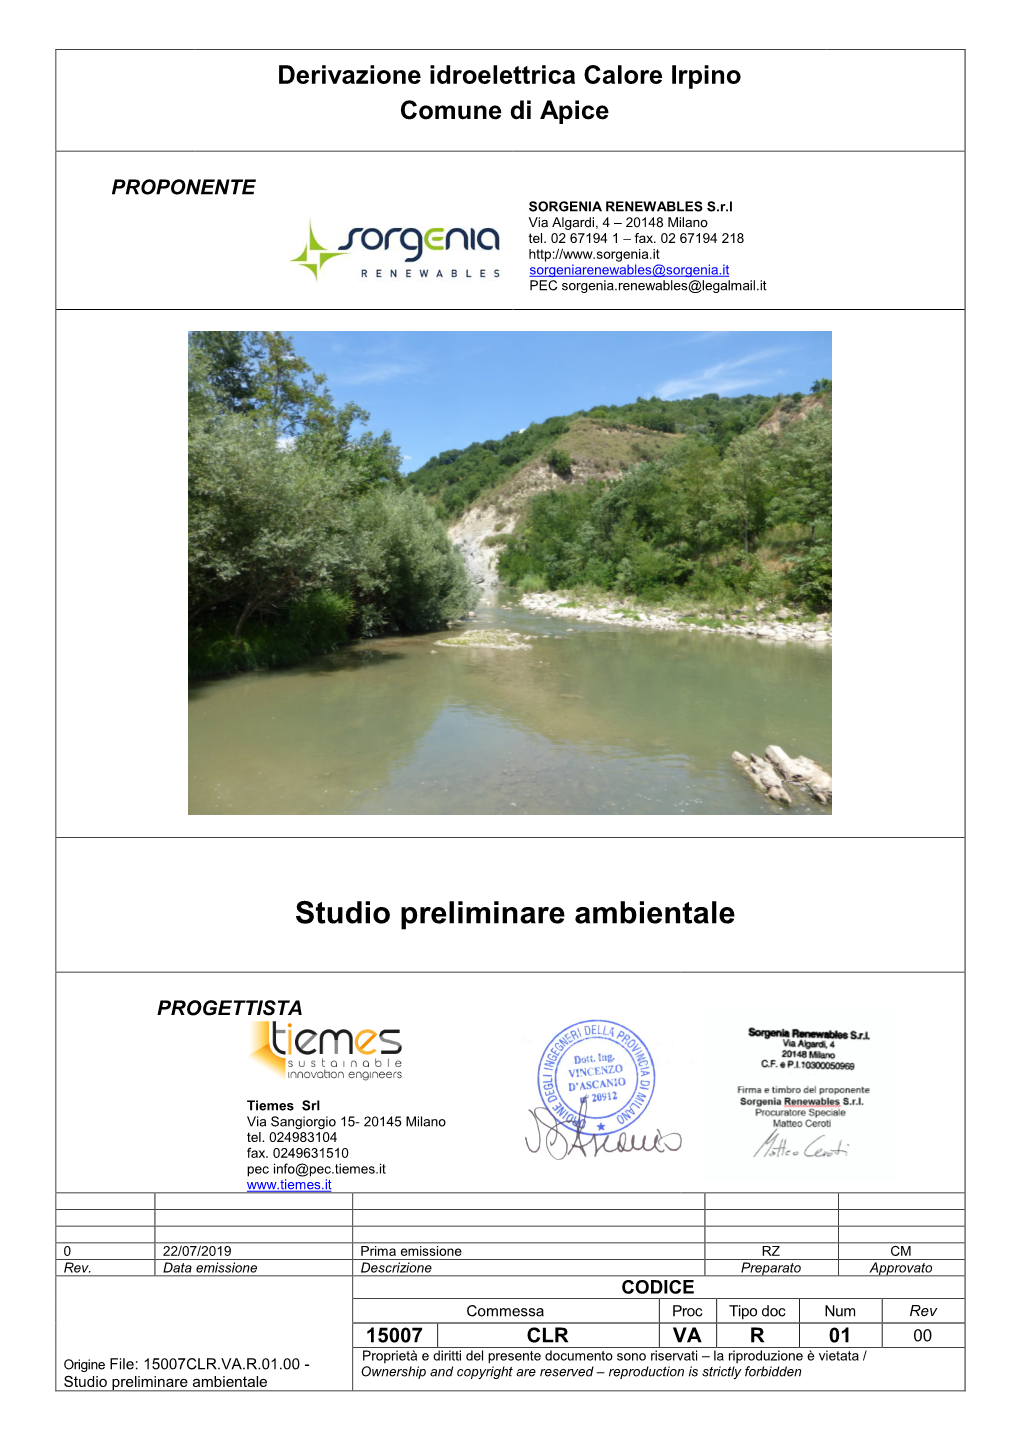 Derivazione Idroelettrica Calore Irpino Comune Di Apice (BN) Studio Preliminare Ambientale